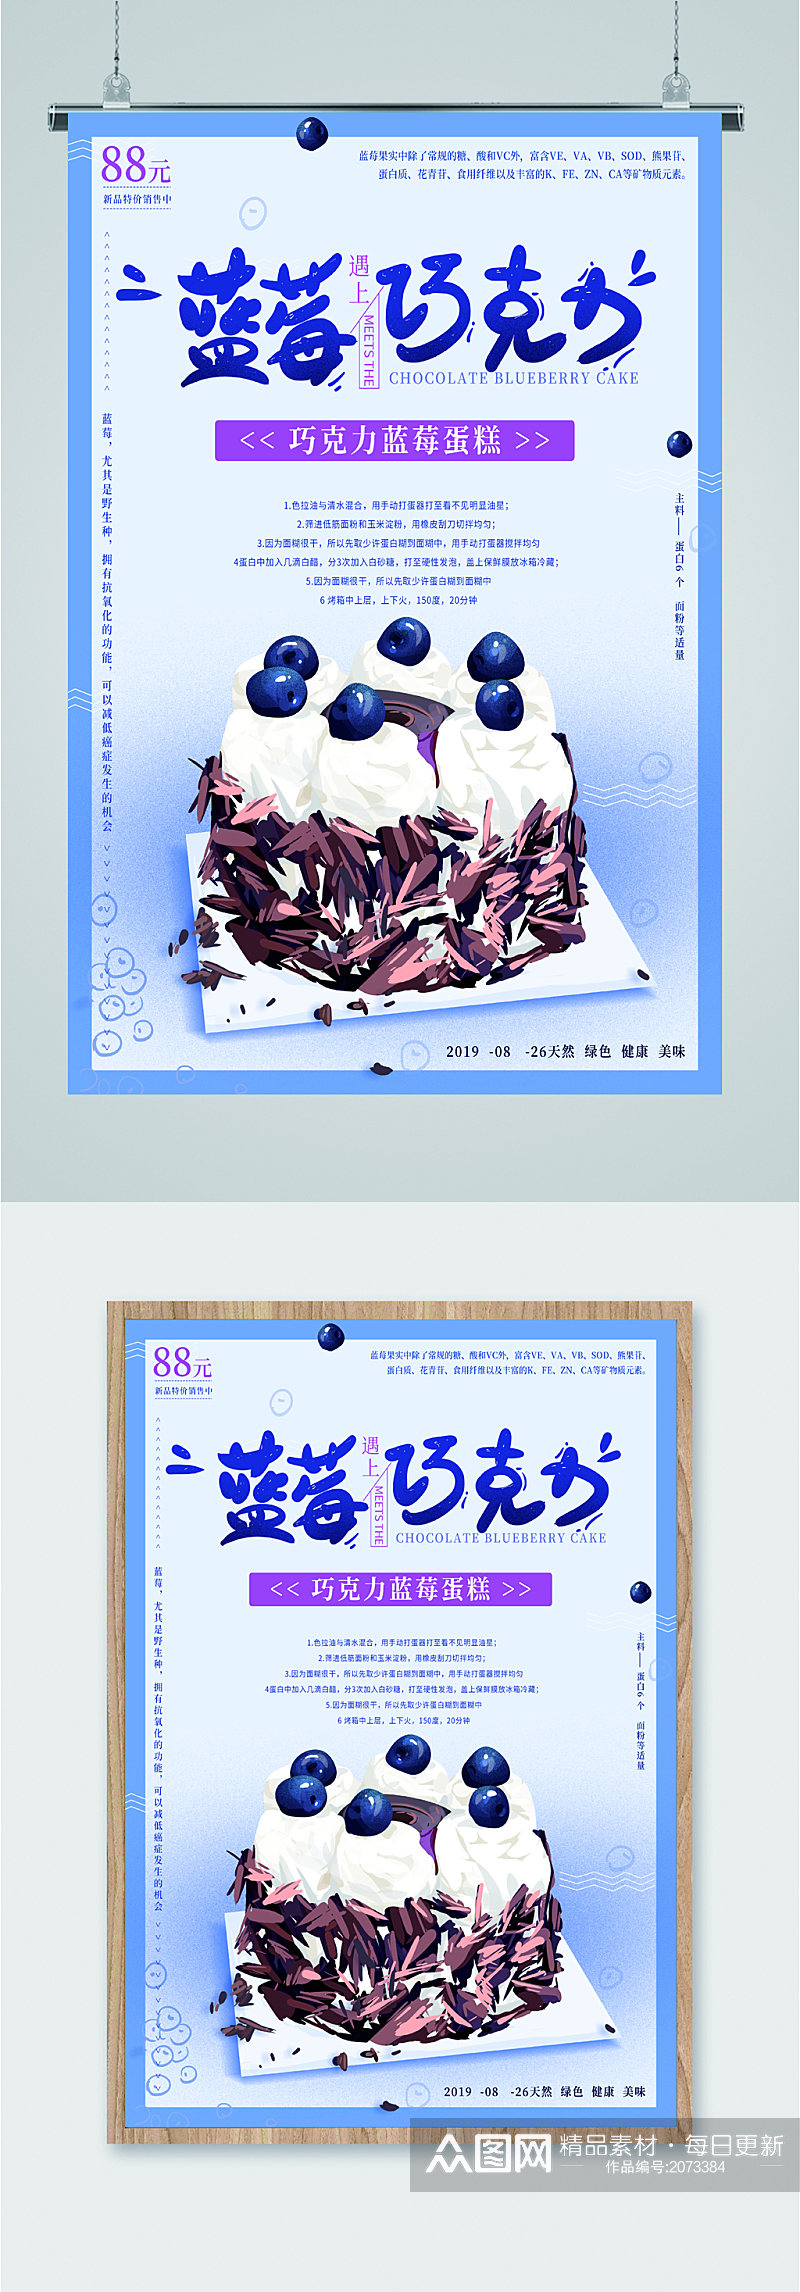 蓝莓巧克力甜品蛋糕海报素材